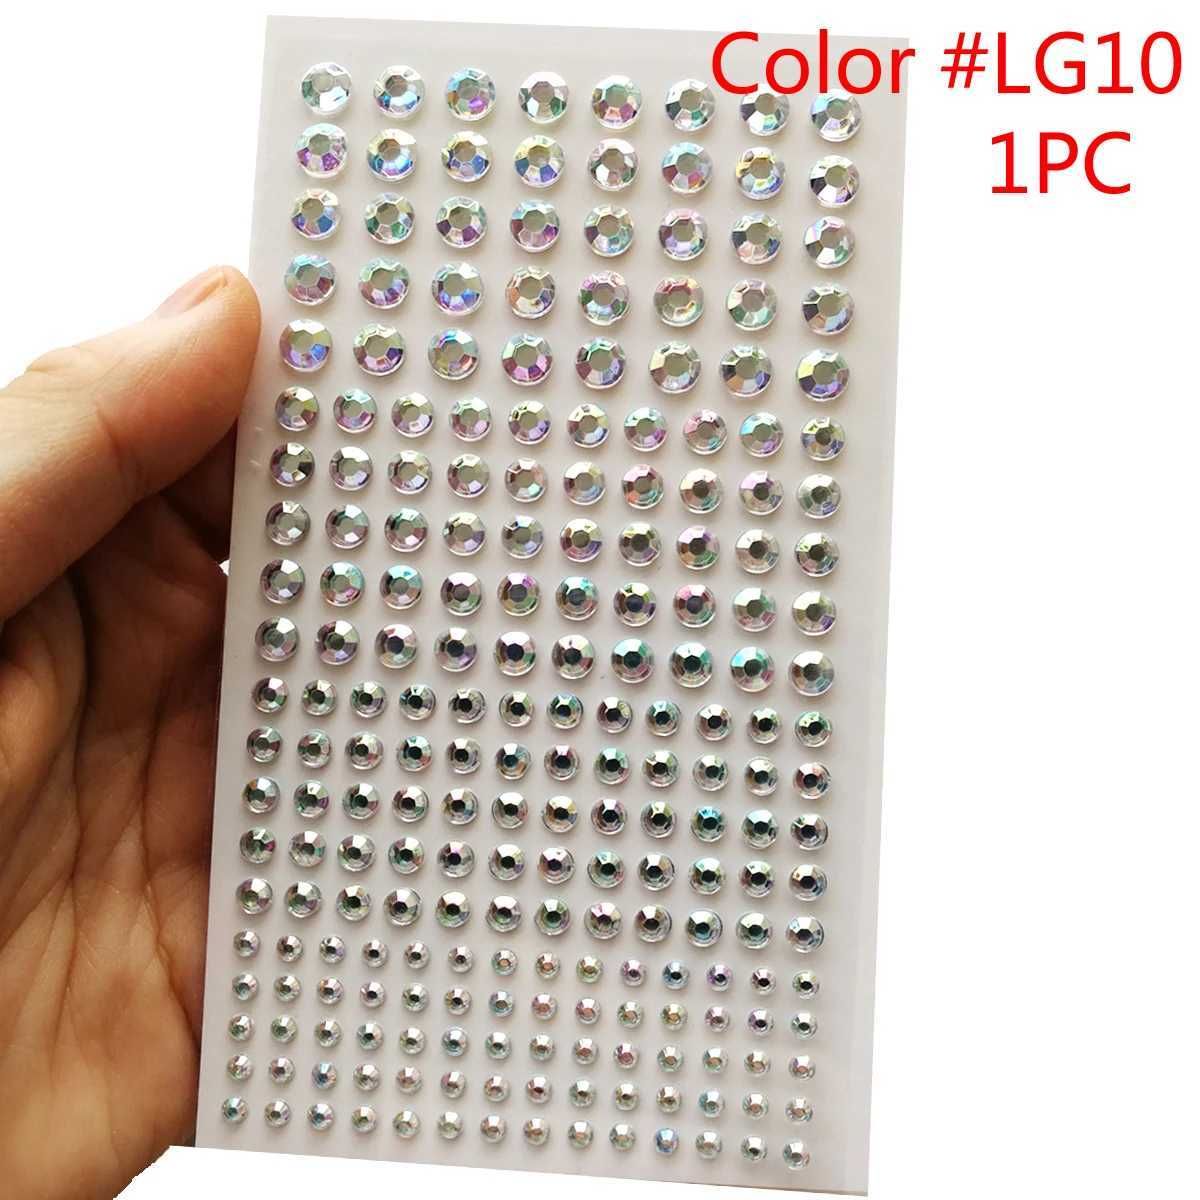 1pc couleur lg10